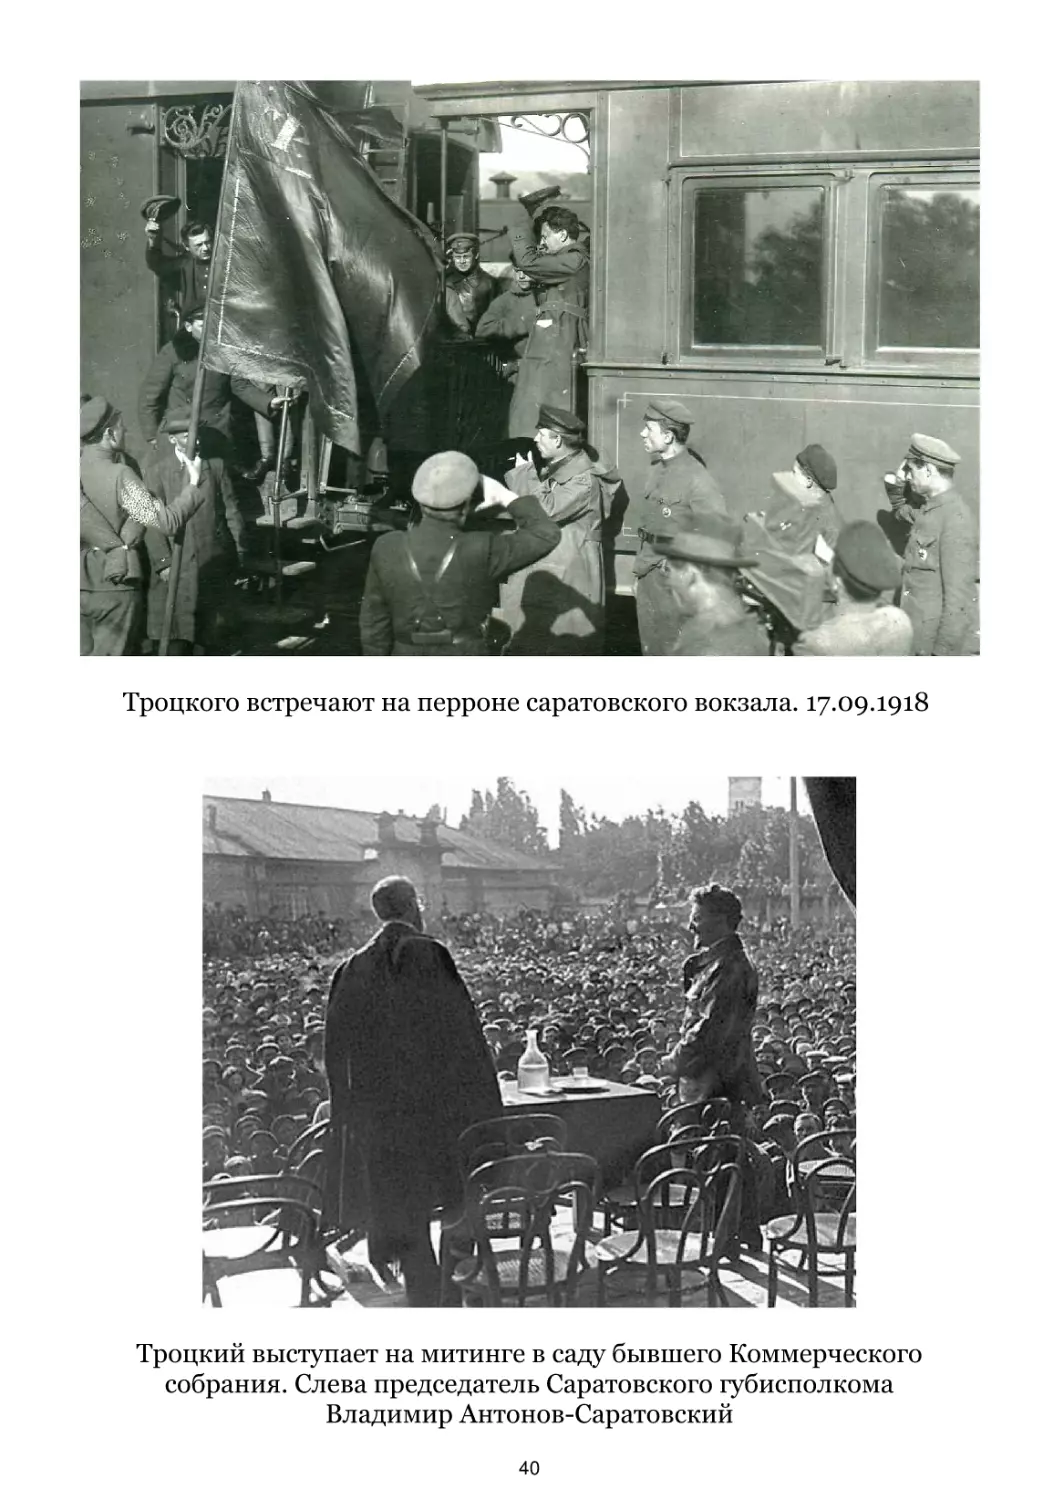 Троцкого встречают на перроне саратовского вокзала. 17.09.1918
Троцкий выступает на митинге в саду бывшего Коммерческого собрания